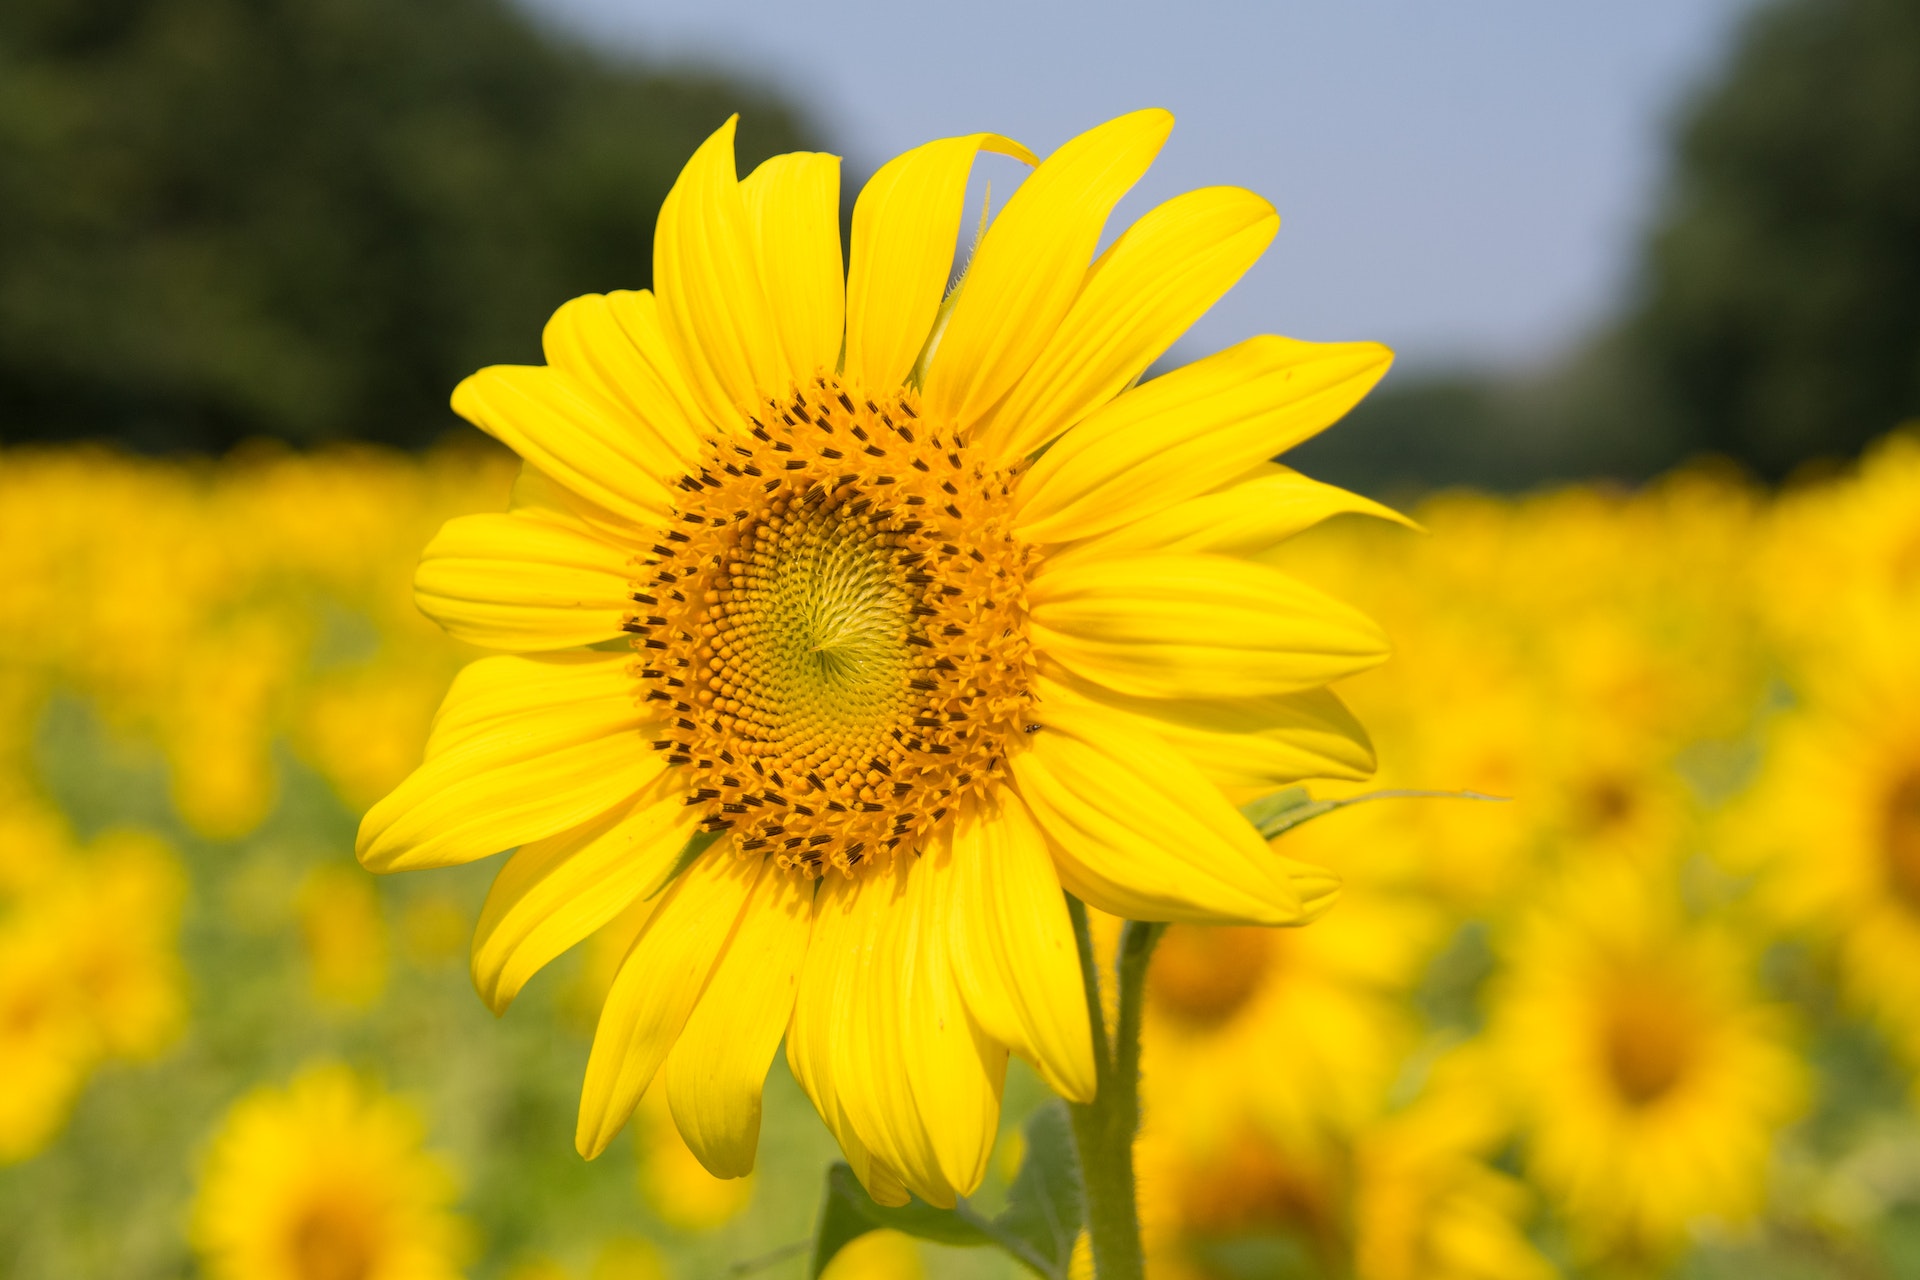 सनफ्लॉवर / सूरजमुखी के बारे में रोचक तथ्य हिंदी  में | Fascinating Facts About Sunflowers Documentary in Hindi